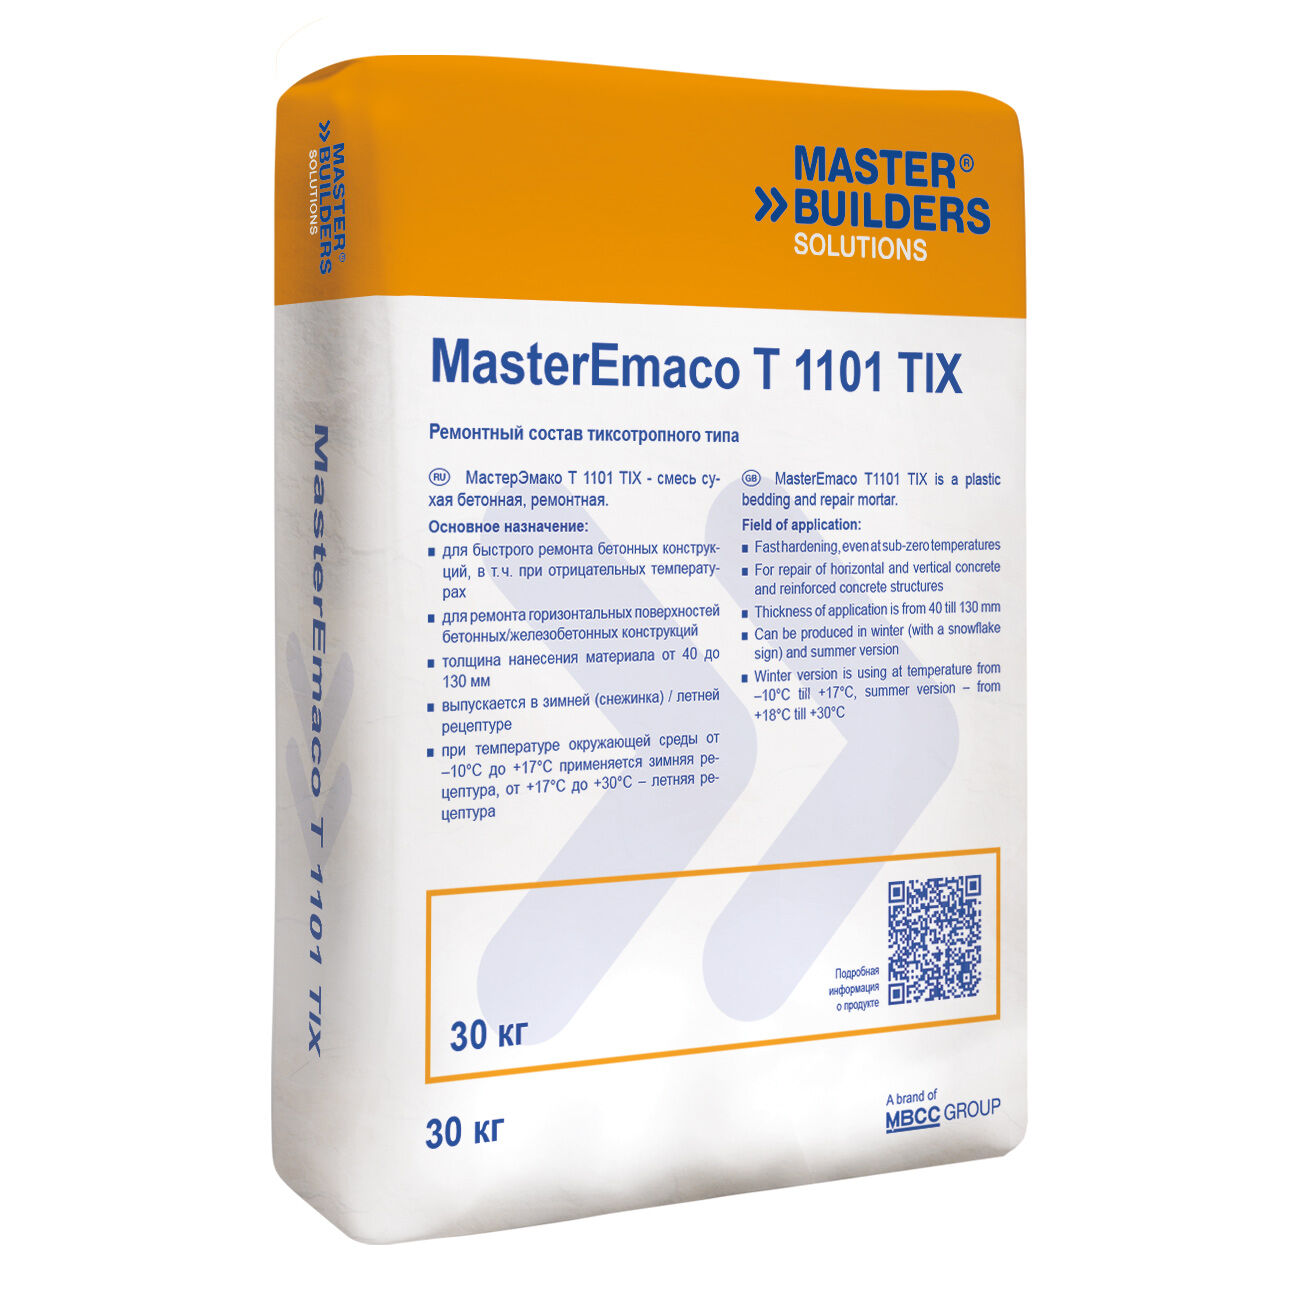 Ремонтная смесь MasterEmaco T 1101 TIX(EMACO FAST TIXO G) Тиксотропный тип